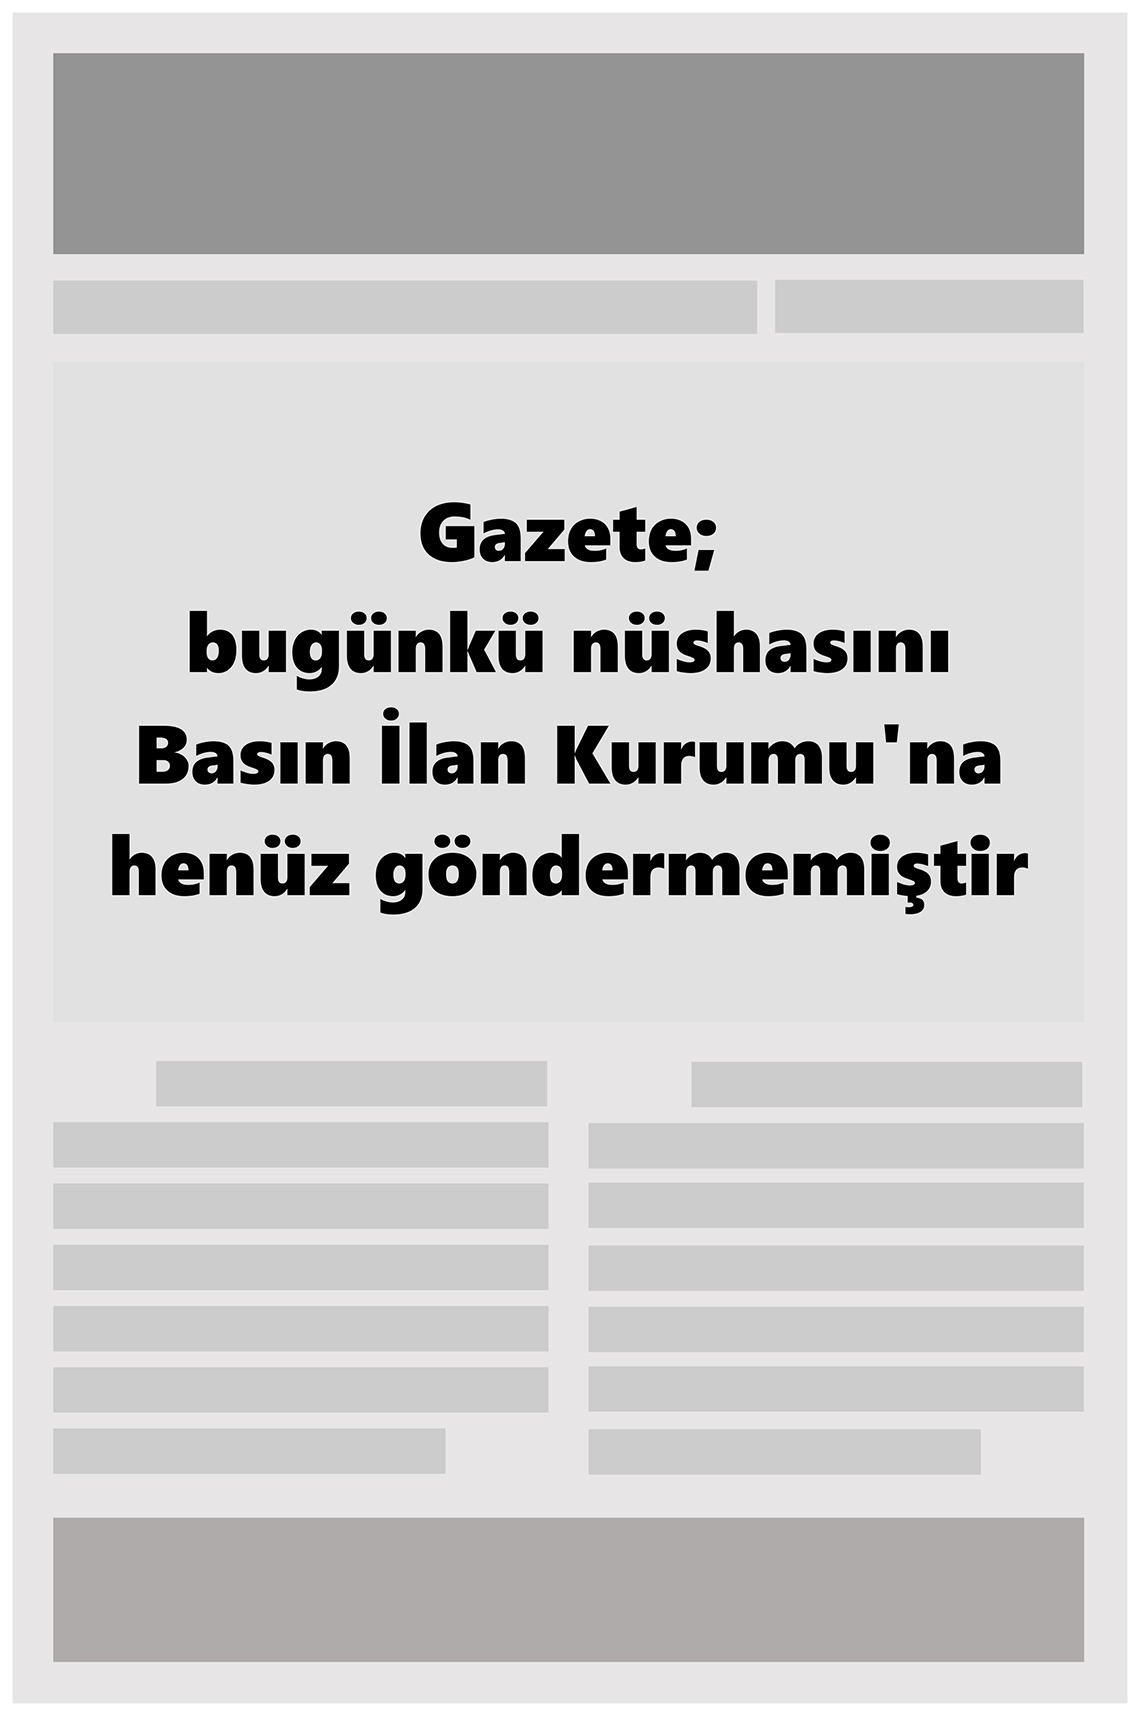 Ankara Anadolu Gazete Manşeti